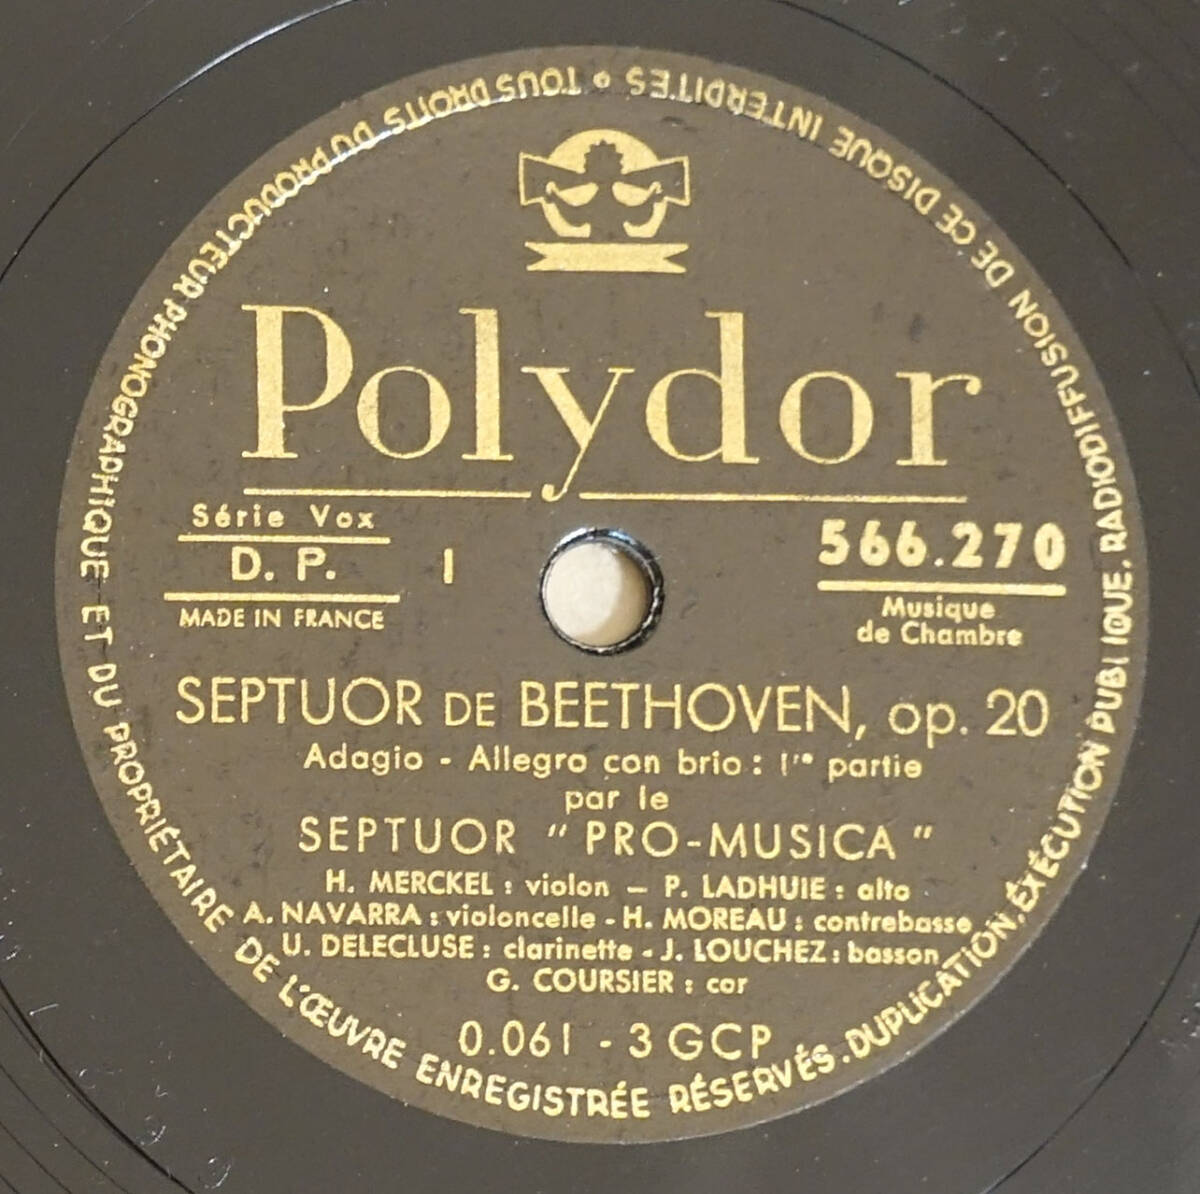 超レア! 仏Polydor ベートーヴェン七重奏 アンリ・メルケル、 アンドレ・ナヴァラ_566271音盤は欠けています。